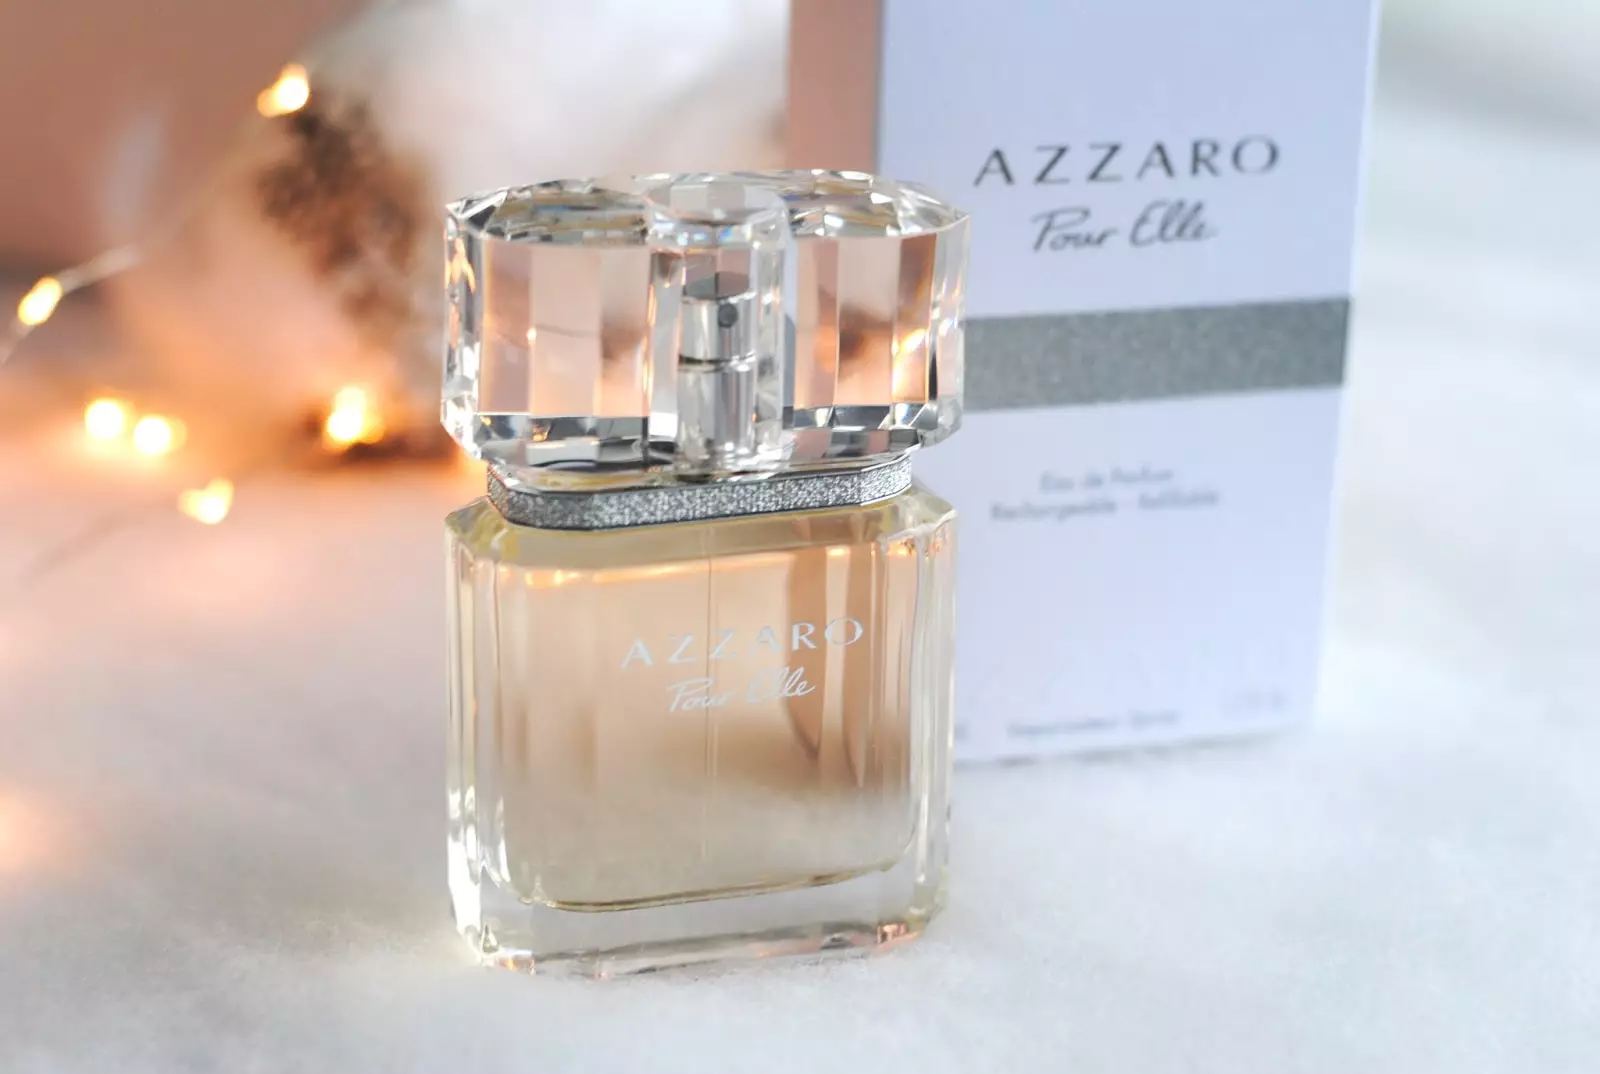 Parfuméria AZZARO: Mademoiselle WC voda a parfumové príchute, originálny ženský parfém, popis Dievča a ďalšie produkty 25334_34